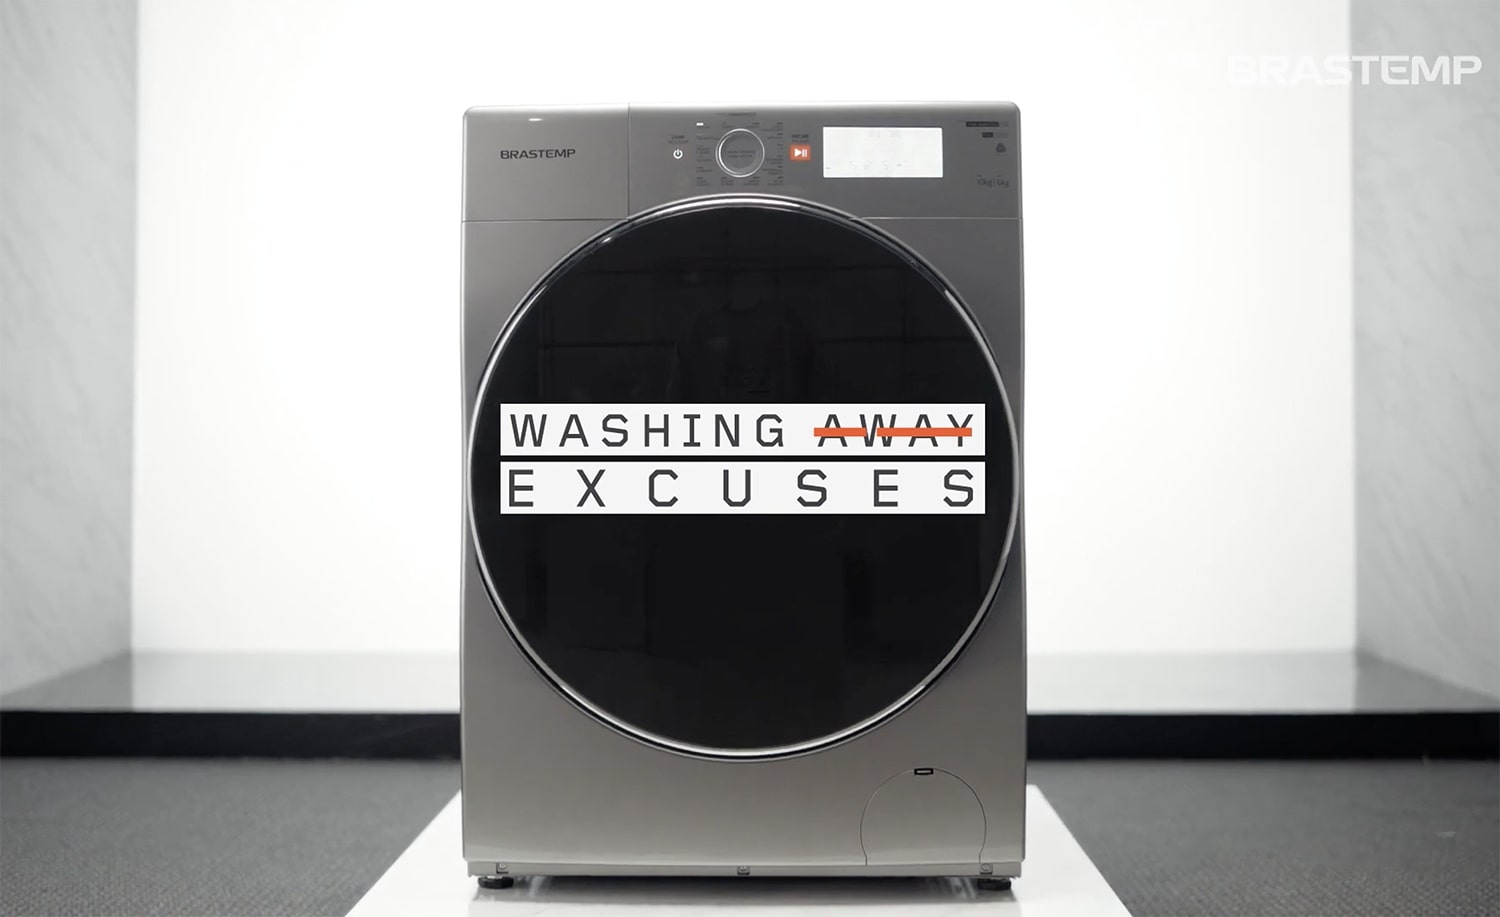 Brastemp: Washing Away Excuses